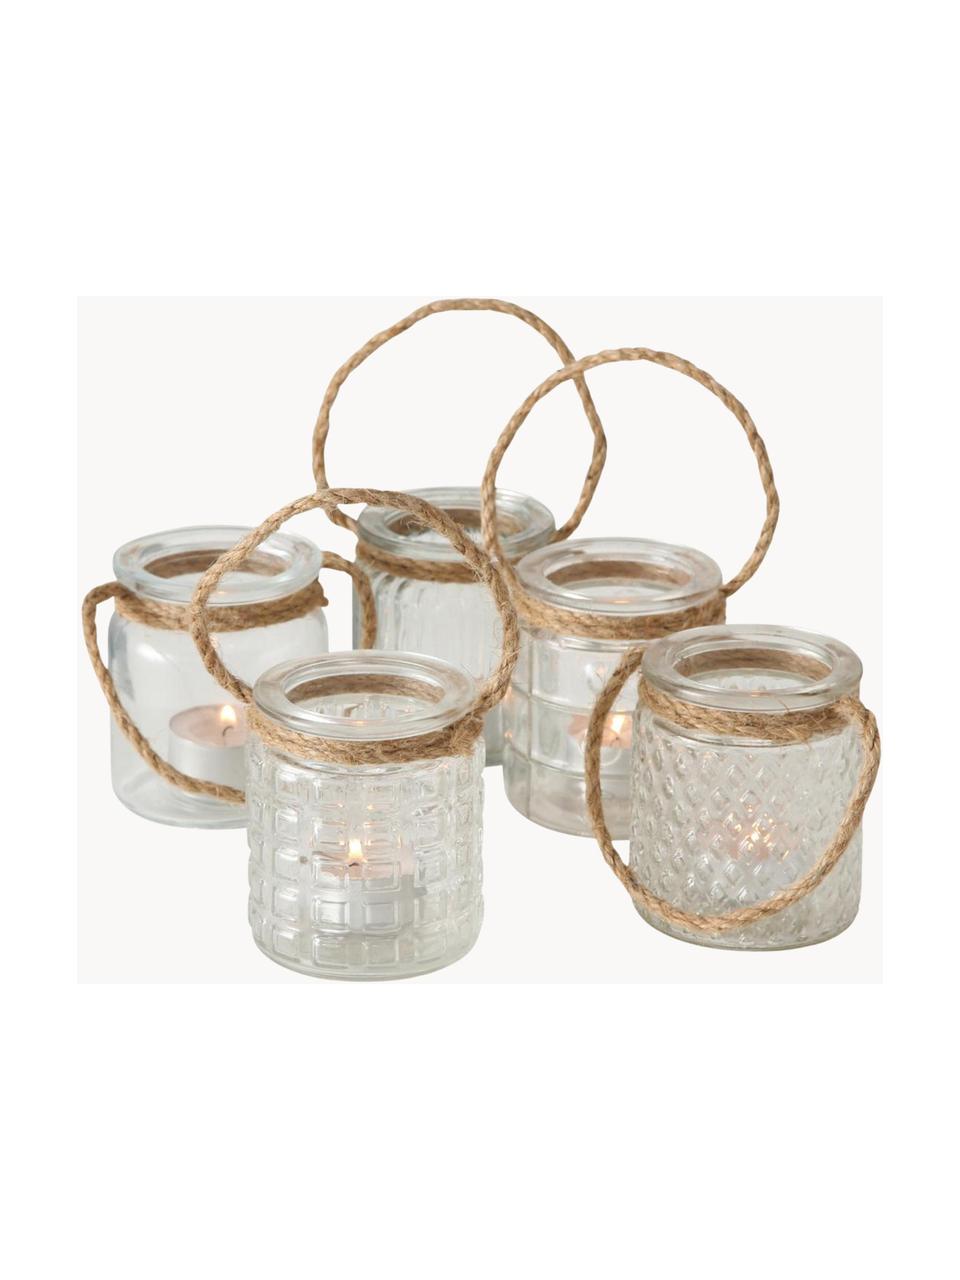 Teelichthalter Trax in unterschiedlichen Designs, 5er-Set, Glas, Seil, Transparent, Beige, Je Ø 7 x H 9 cm